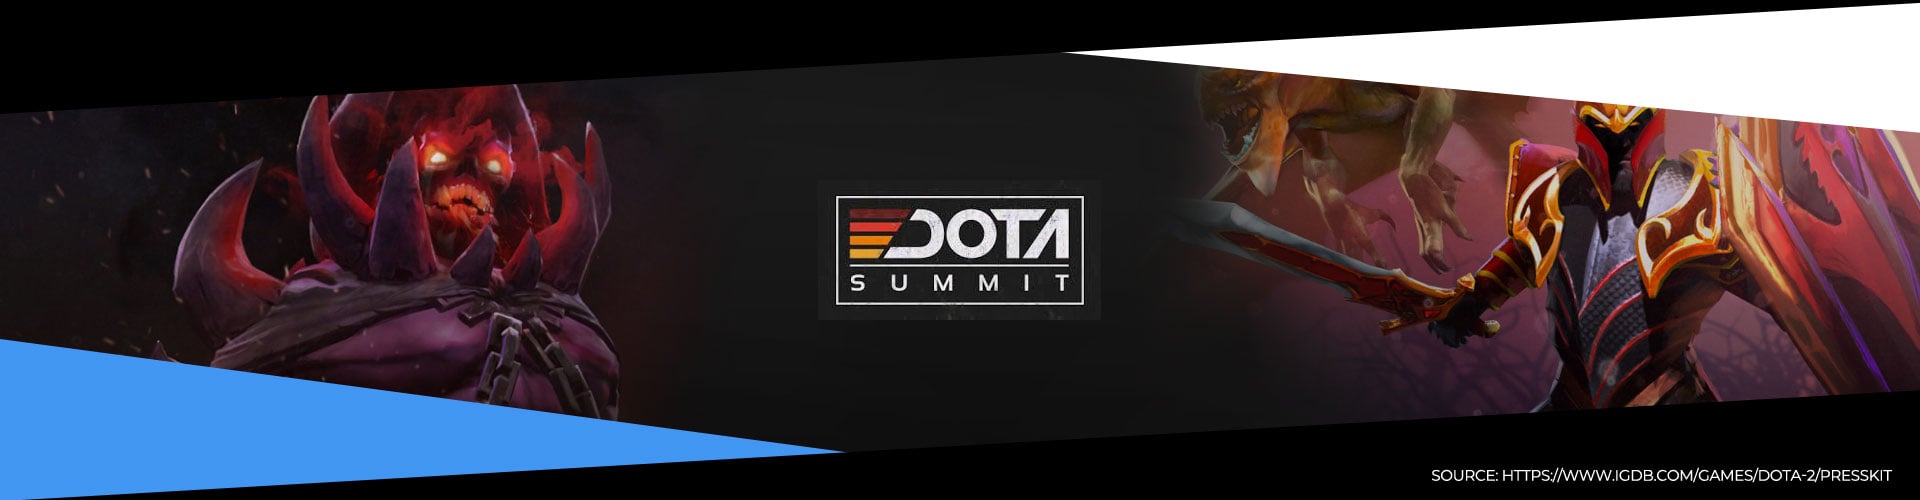 Denna eventsida för Dota Summit 11 innehåller all information om turneringen.